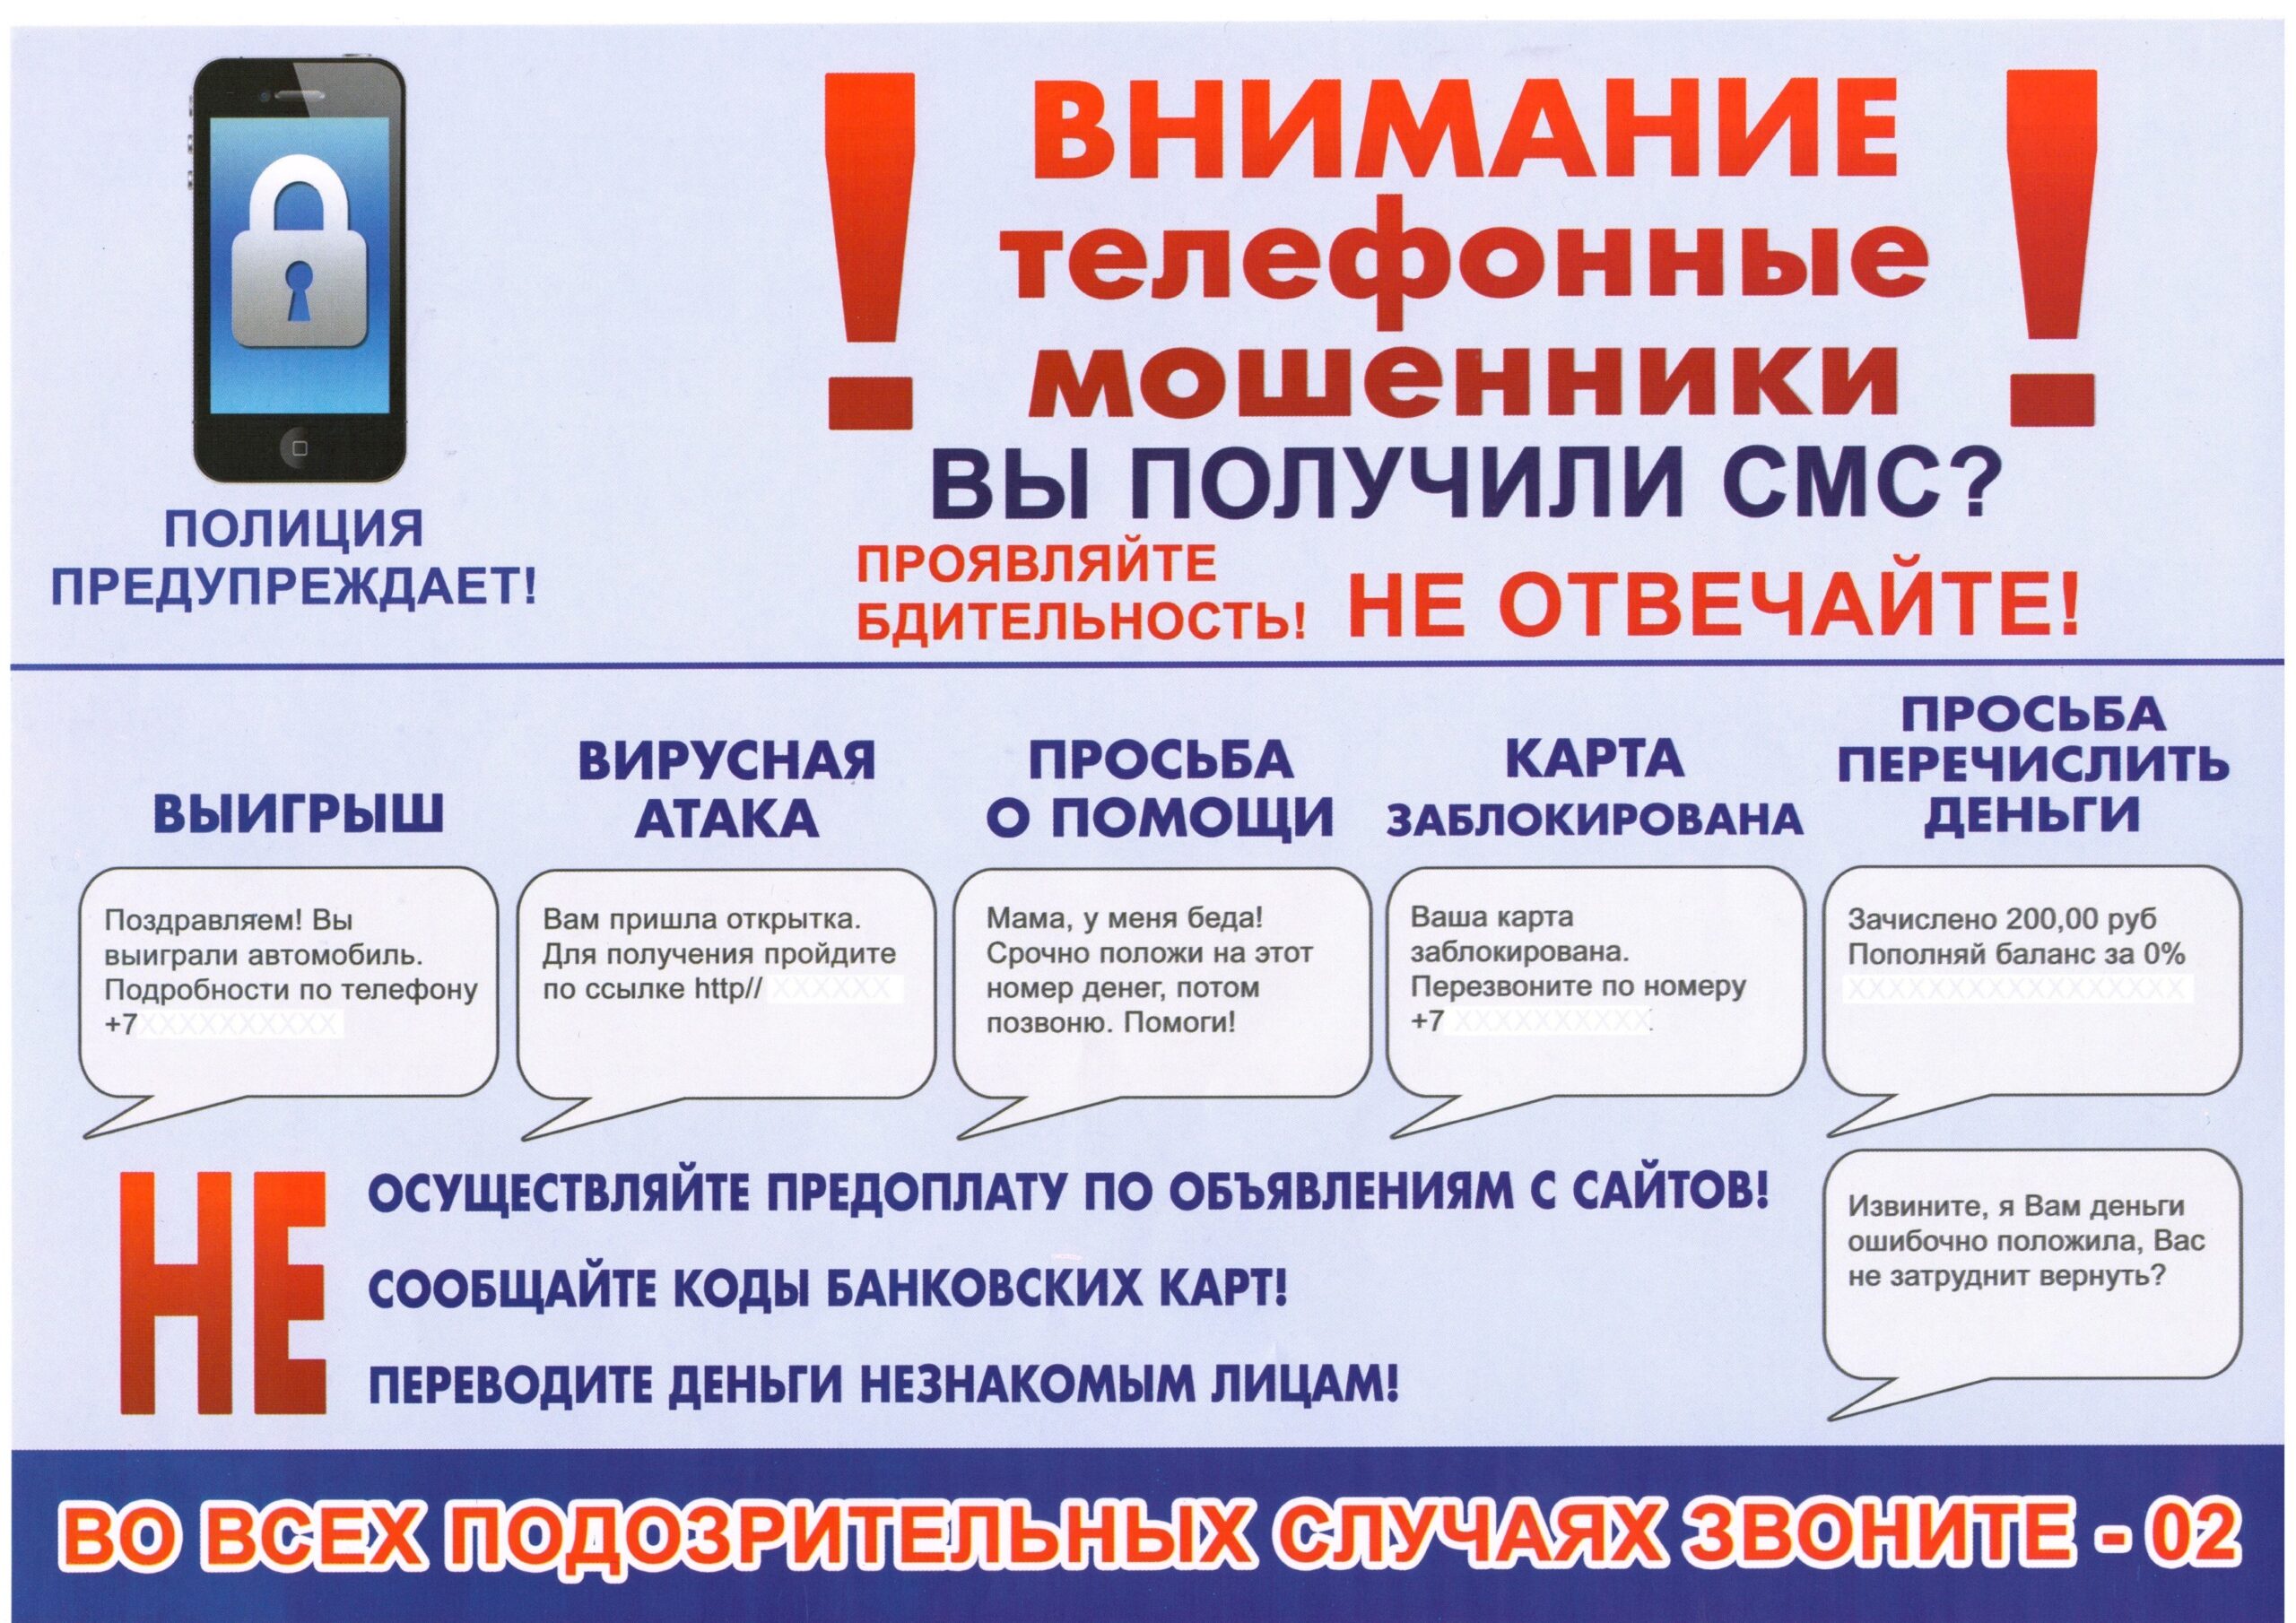 Телефонные мошенники (памятка МВД).